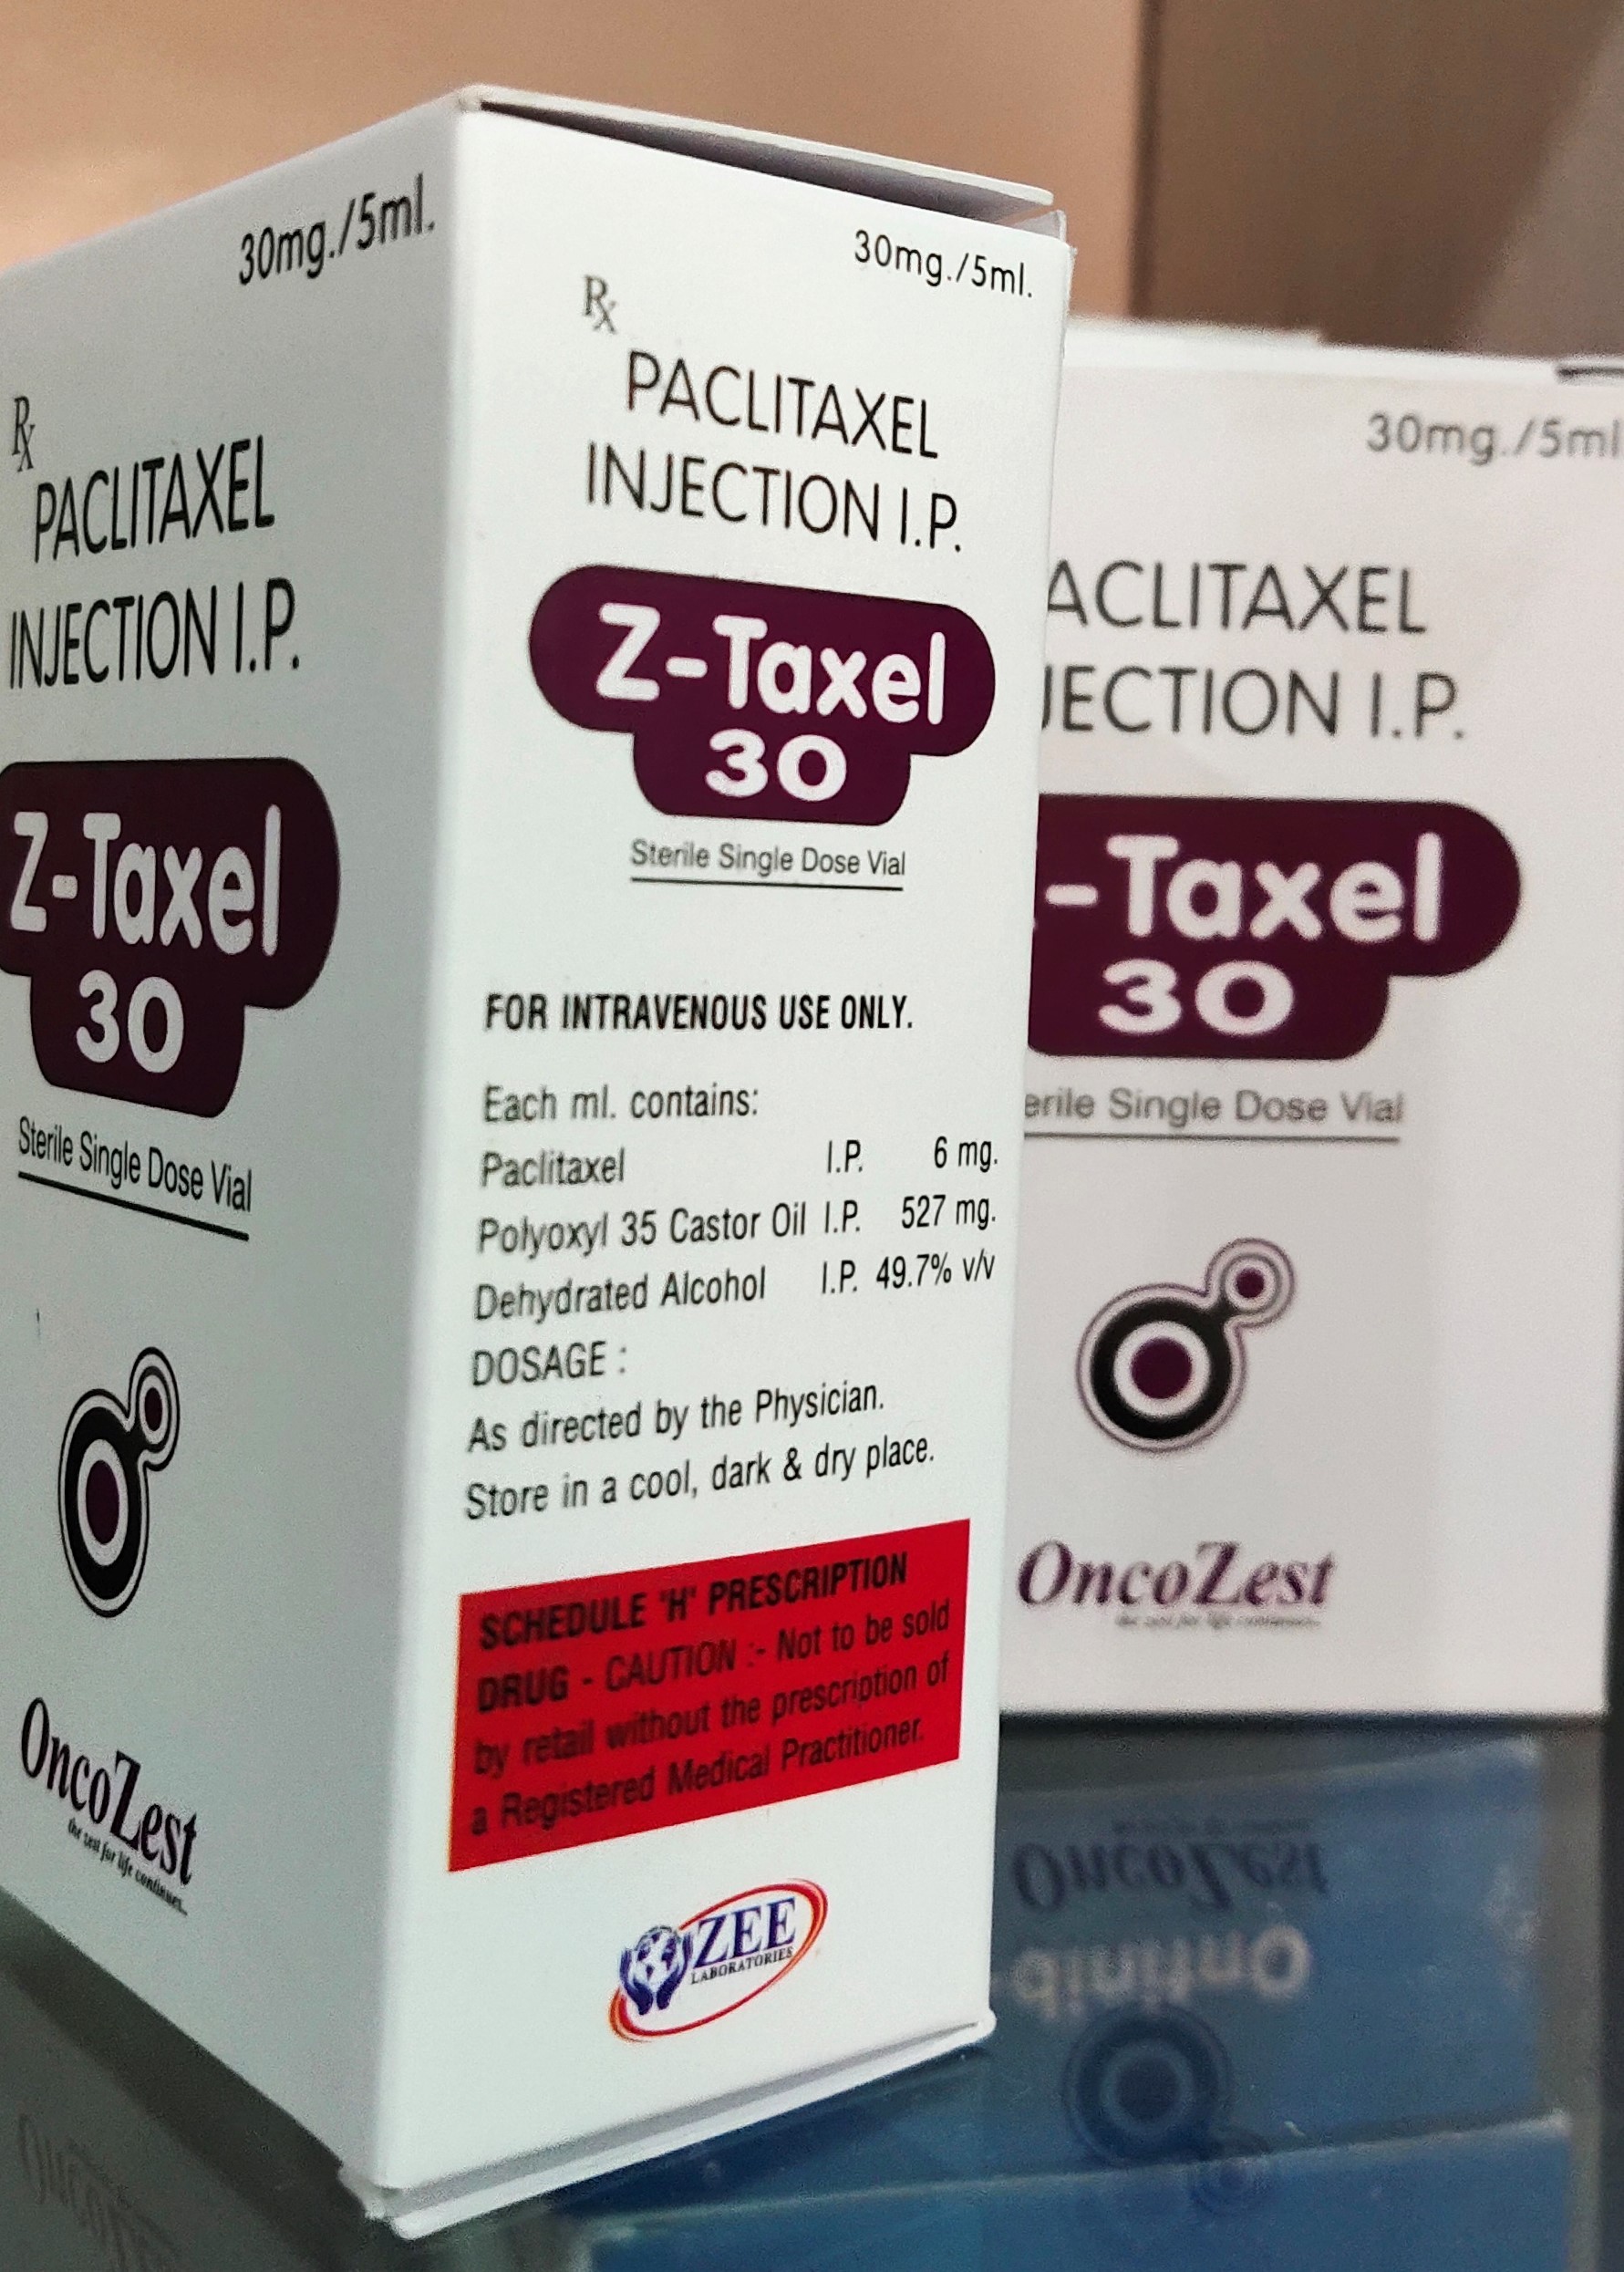 Z -Taxel 30 Paclitaxel Injection I.P